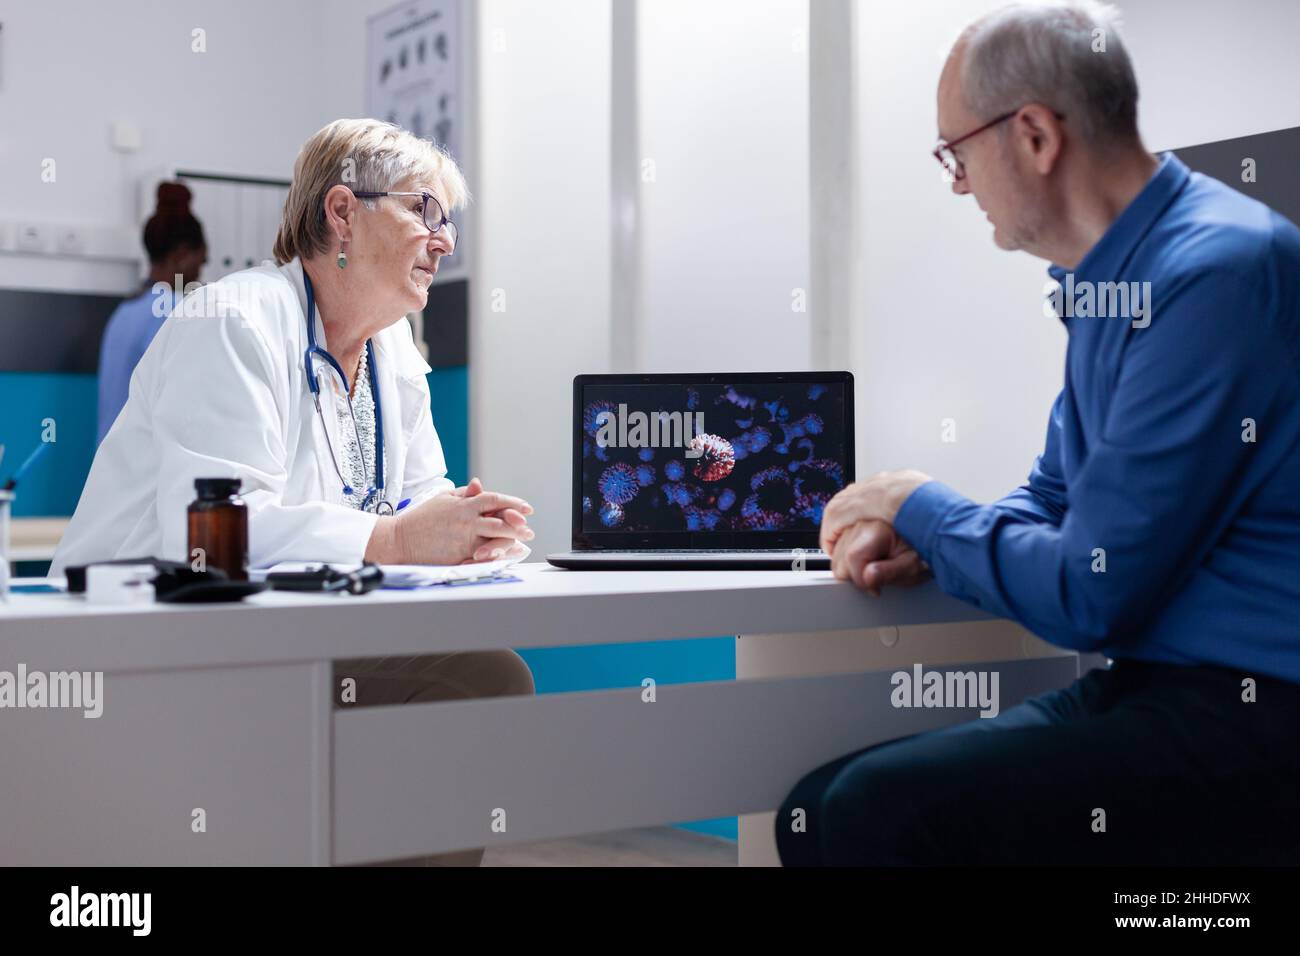 Le médecin et le patient discutent de l'illustration du coronavirus sur l'ordinateur portable.Généraliste utilisant un ordinateur pour expliquer la représentation visuelle de la bactérie Covid 19 à l'homme âgé. Banque D'Images